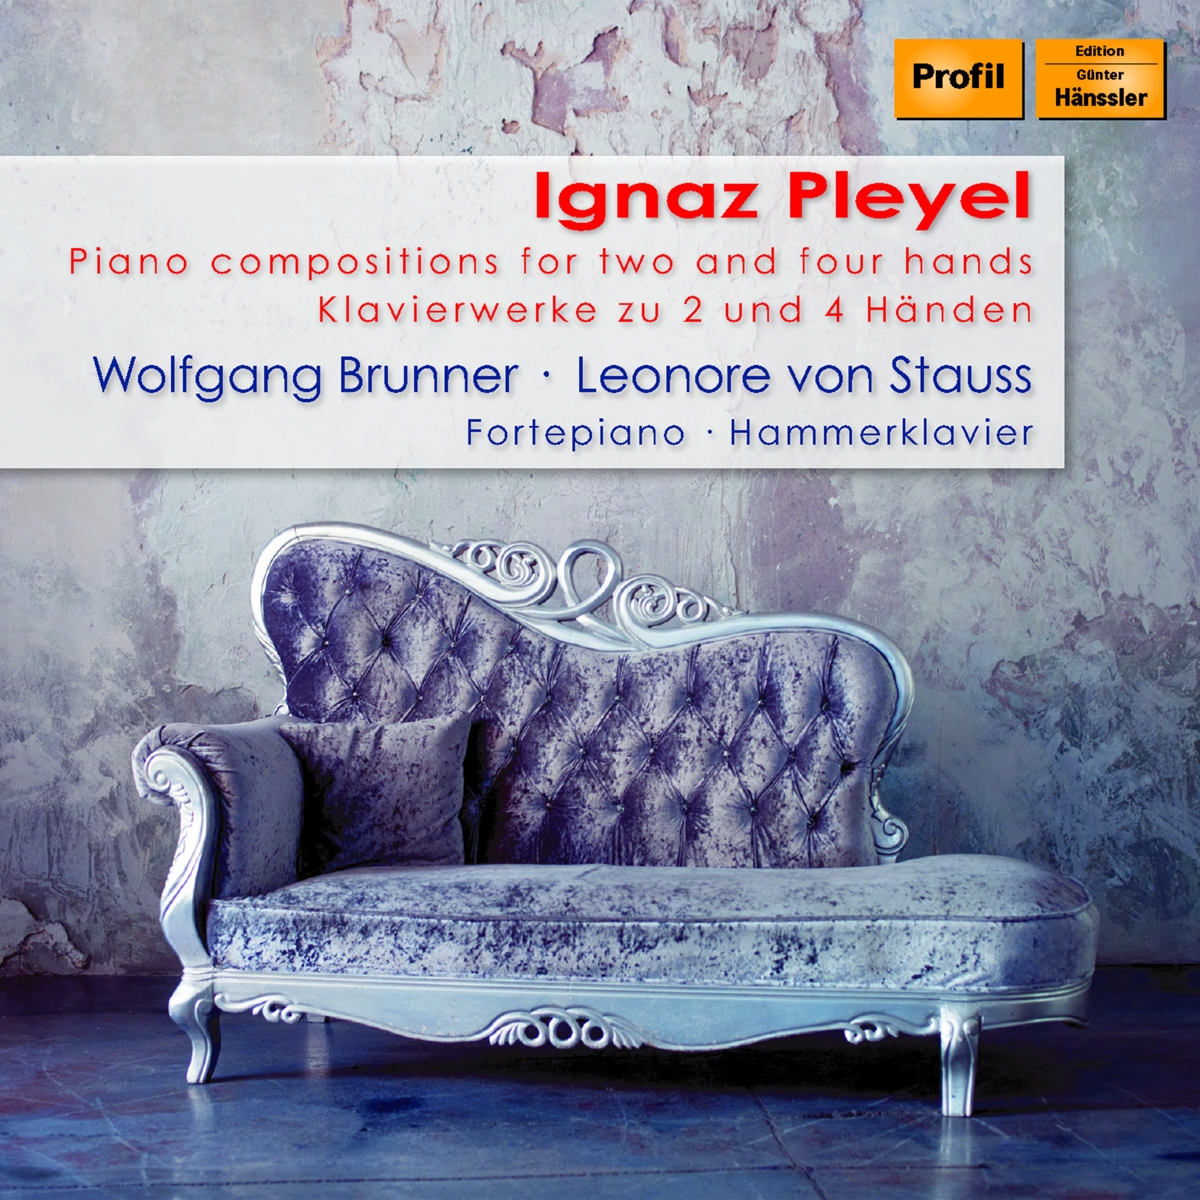 Ignaz Pleyel: Klavierwerke zu 2 und 4 Händen